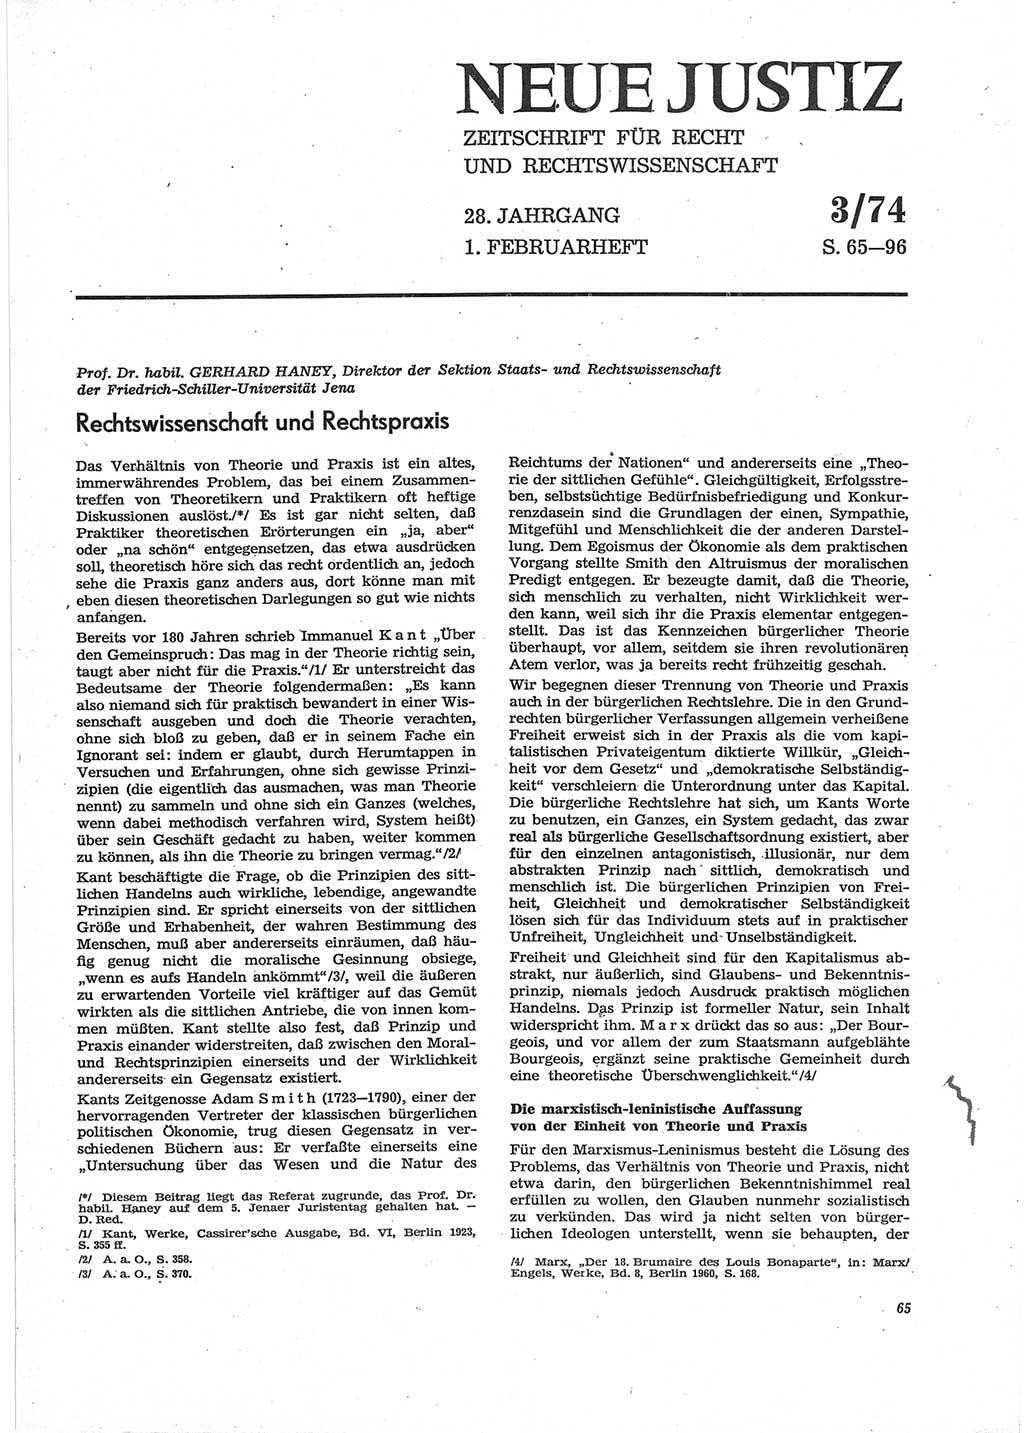 Neue Justiz (NJ), Zeitschrift für Recht und Rechtswissenschaft [Deutsche Demokratische Republik (DDR)], 28. Jahrgang 1974, Seite 65 (NJ DDR 1974, S. 65)